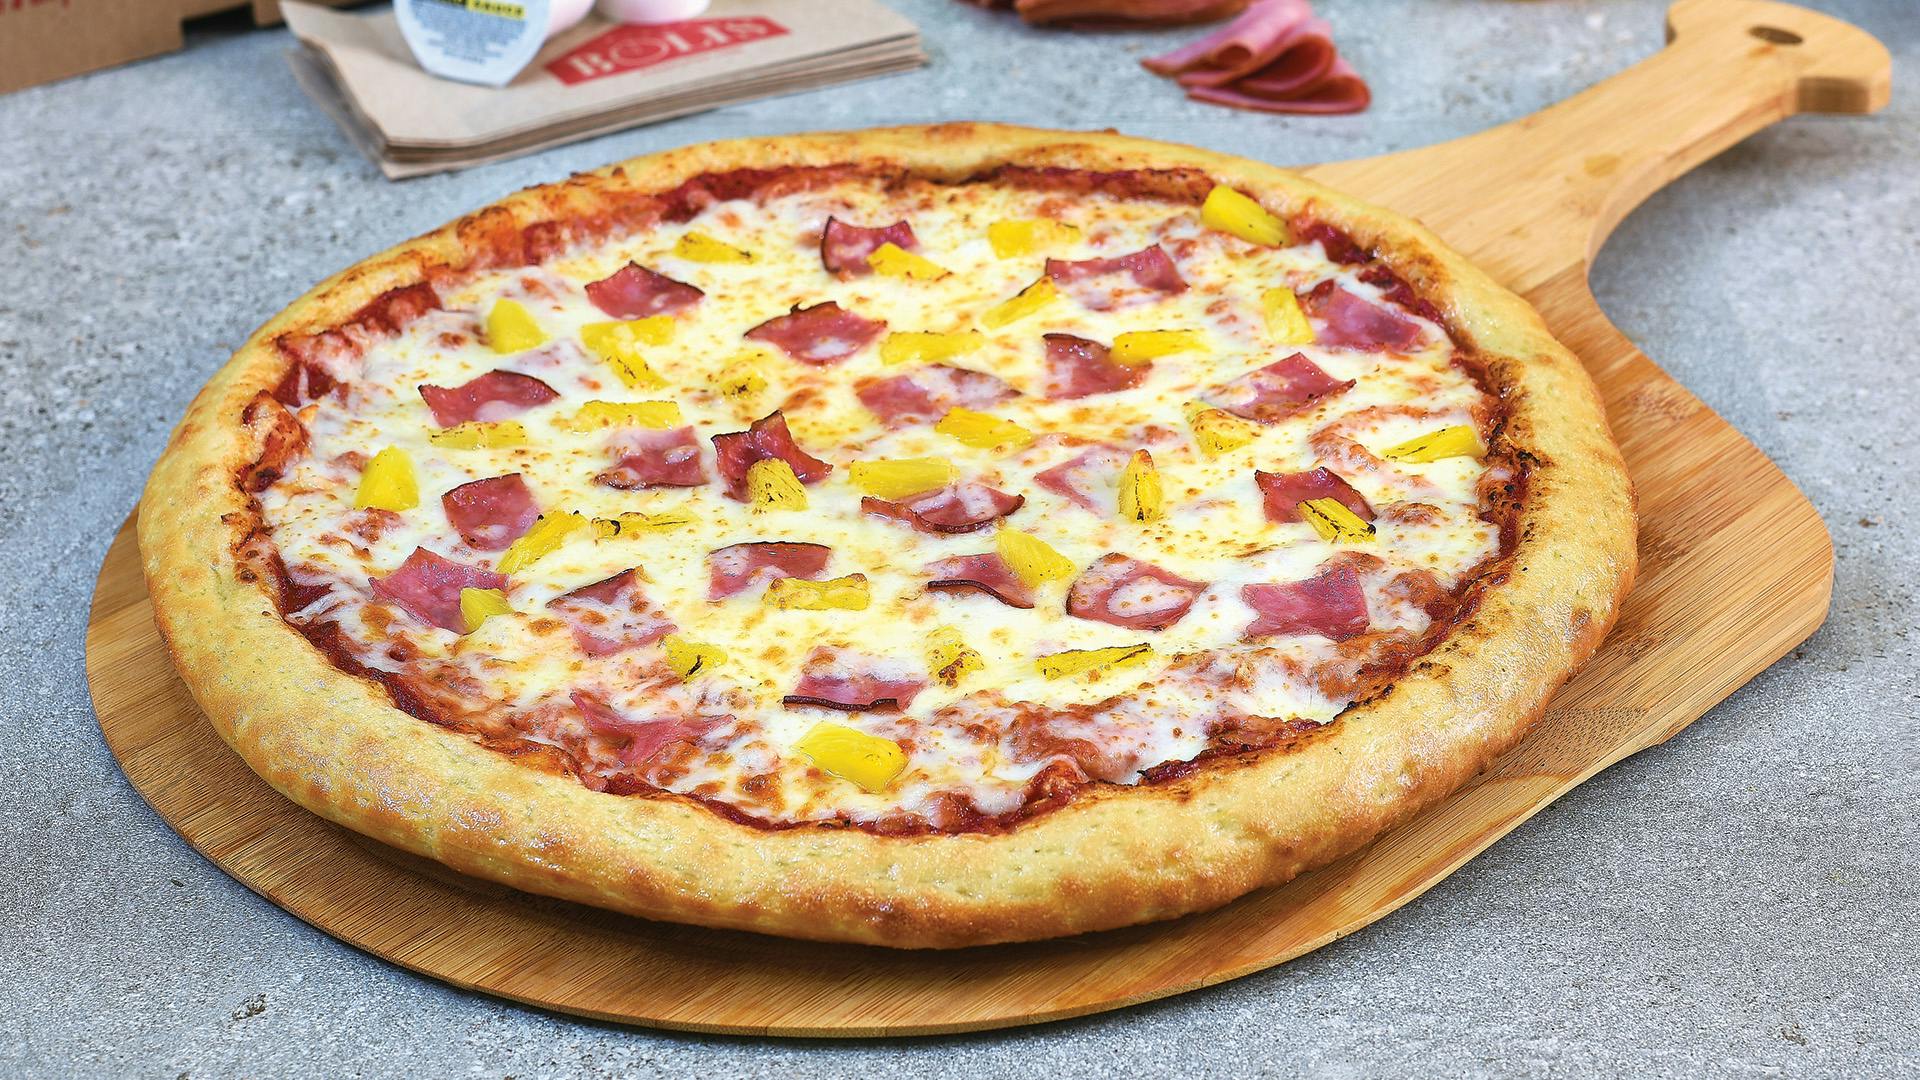 HAWAIIAN PIZZA from Boli's Pizza in Washington, DC